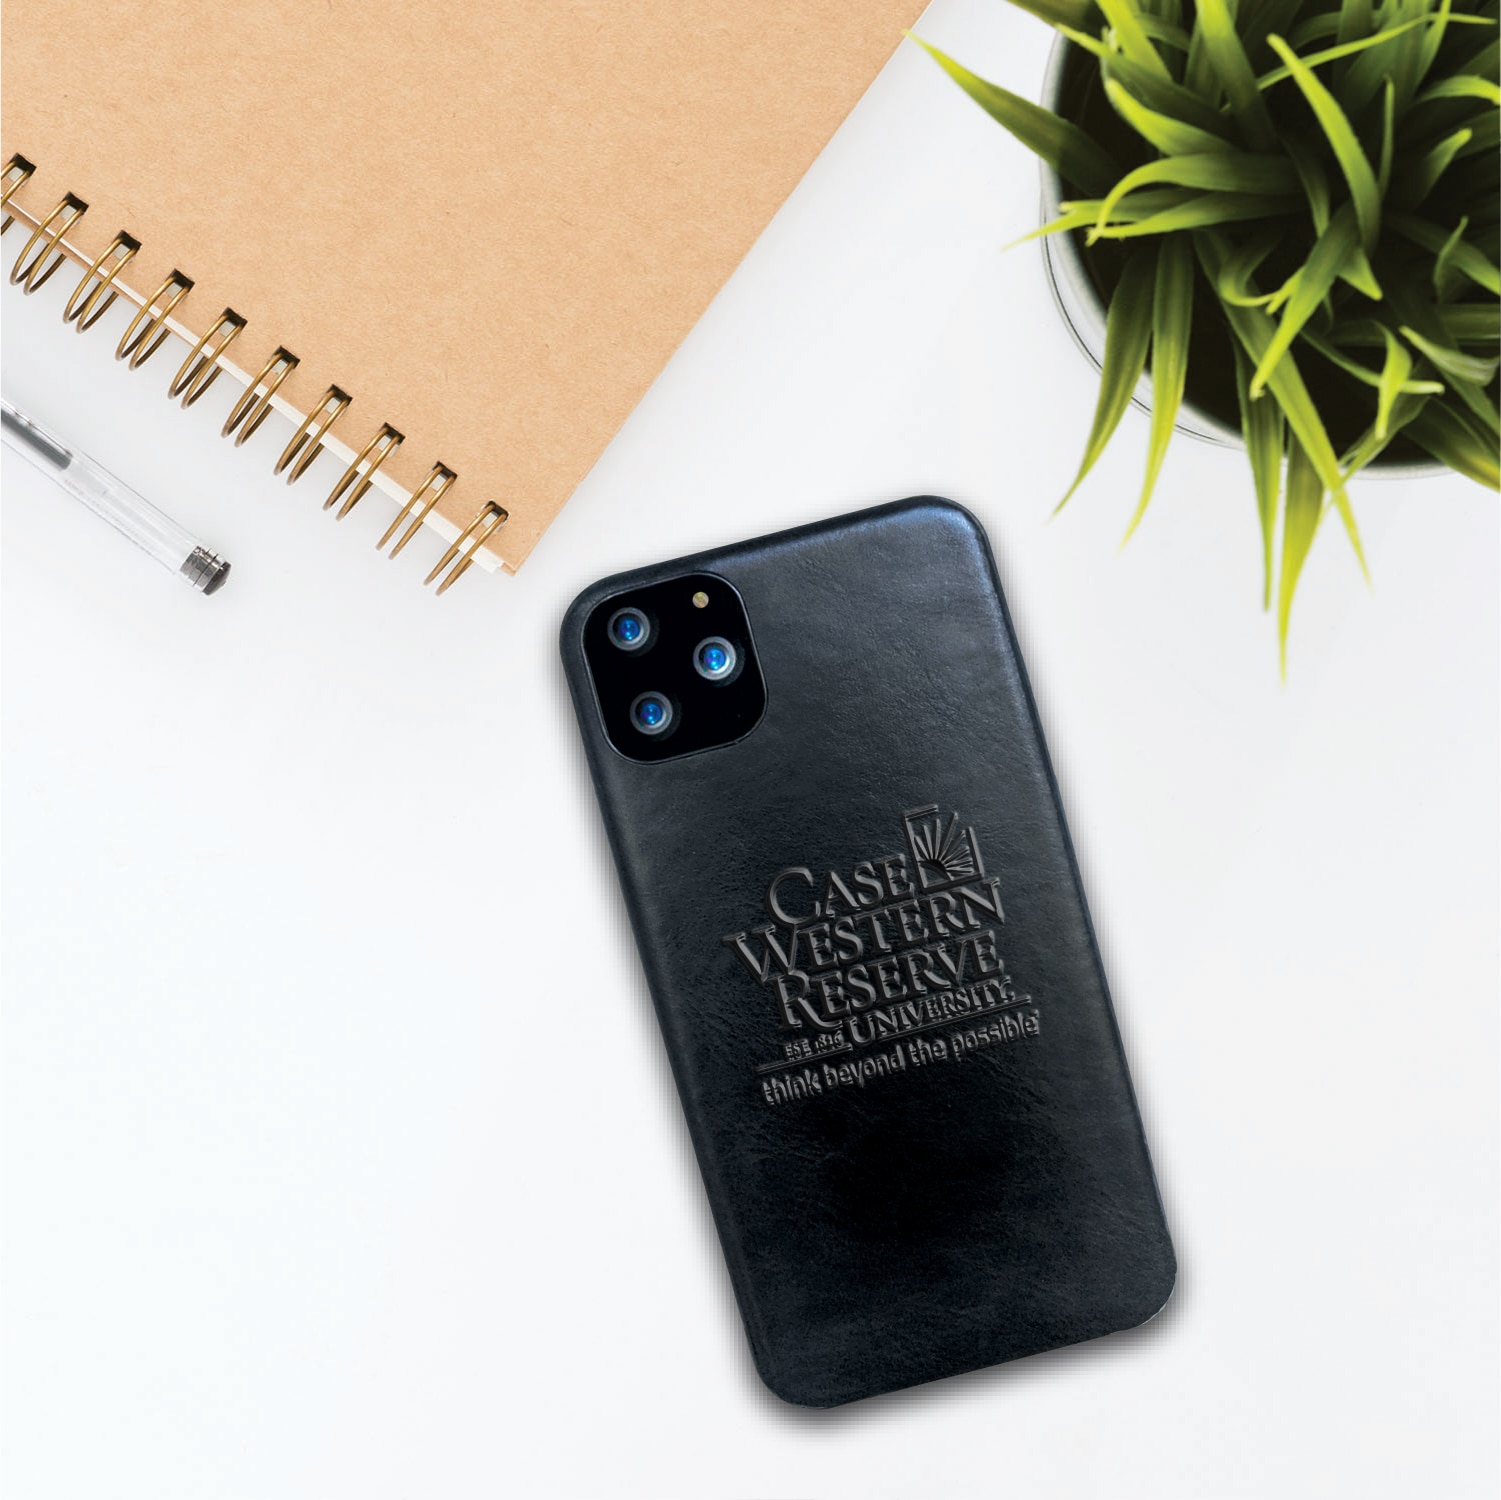 Case Western Reserve University Leather Shell Phone Case, Black, Alumni V2 - iPhone 13 Pro